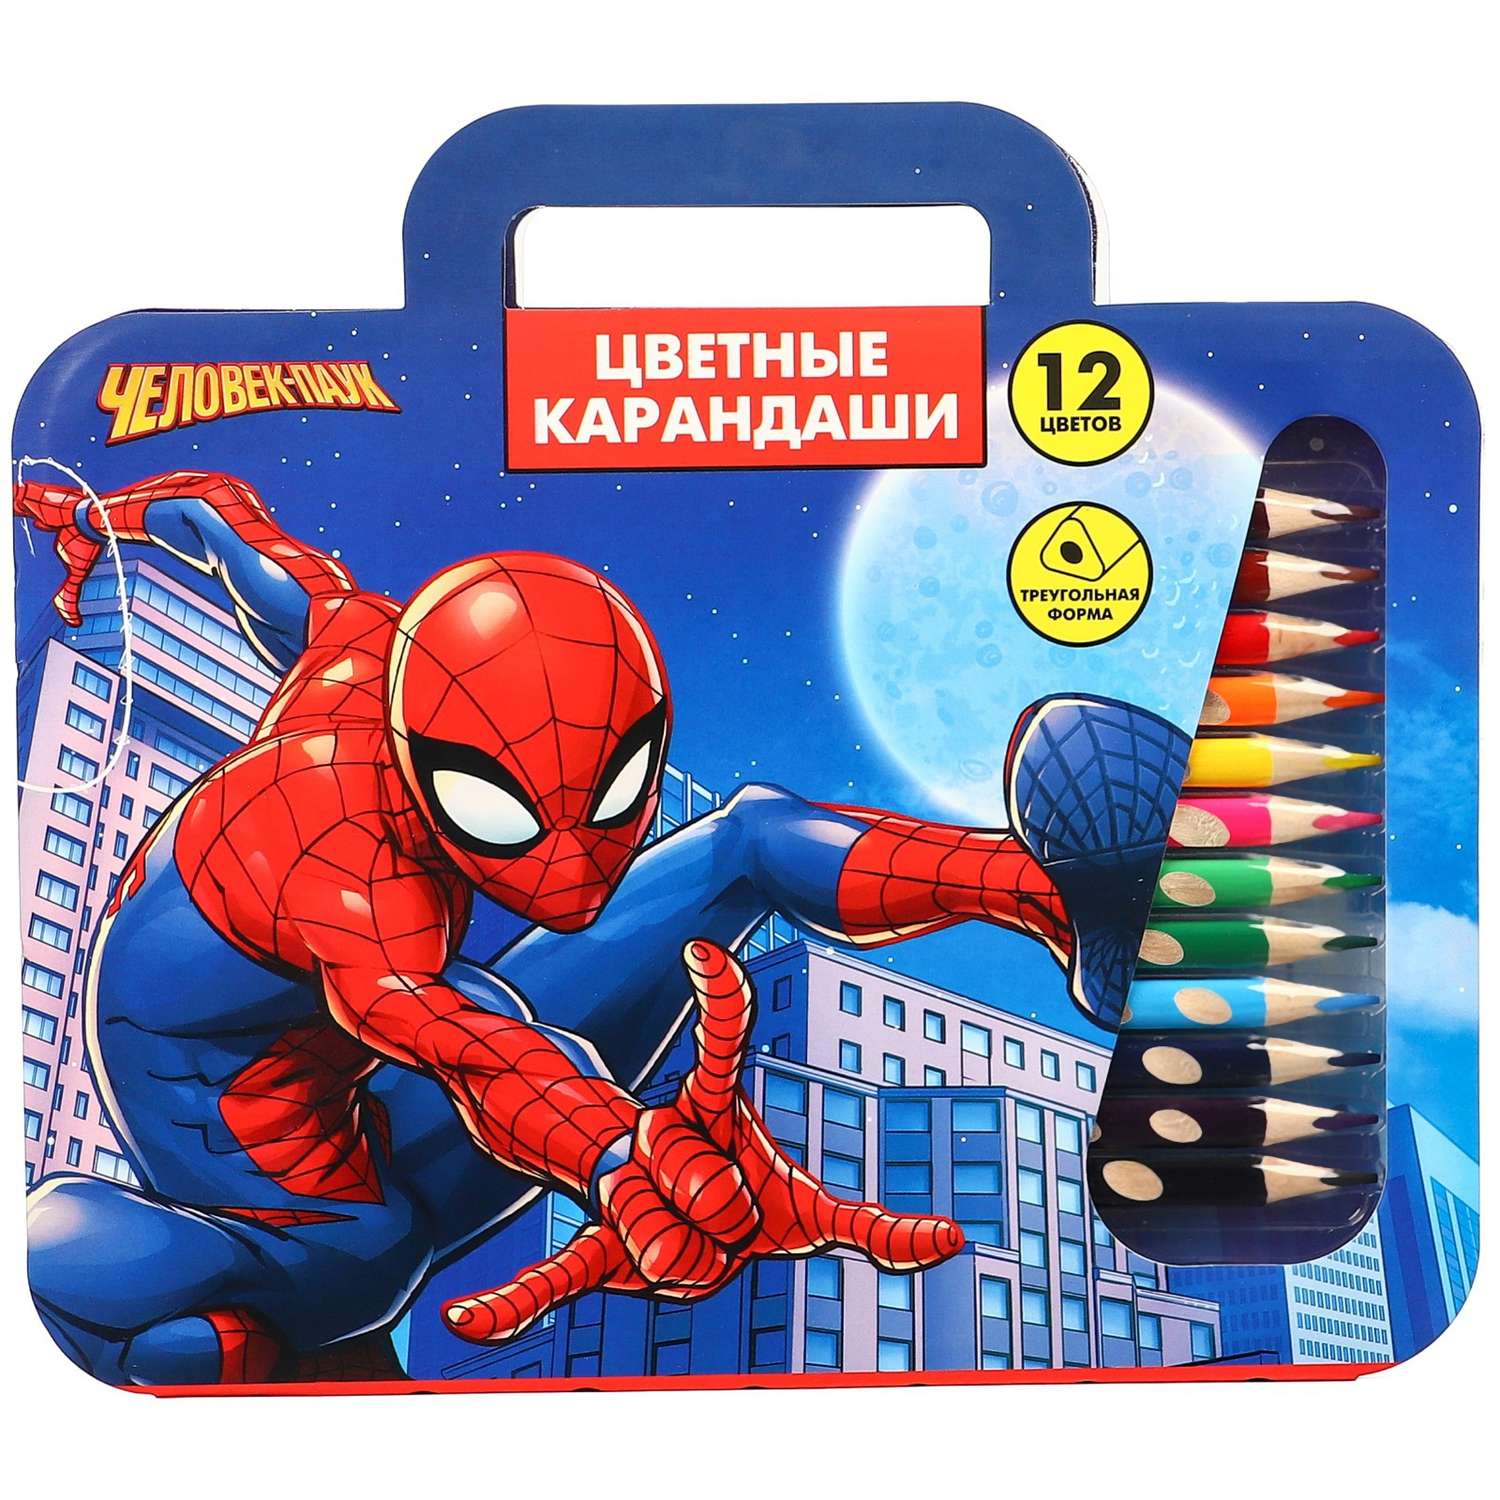 Карандаши Marvel цветные 12 цветов в пенале «Супер-мен» Человек-паук - фото 8